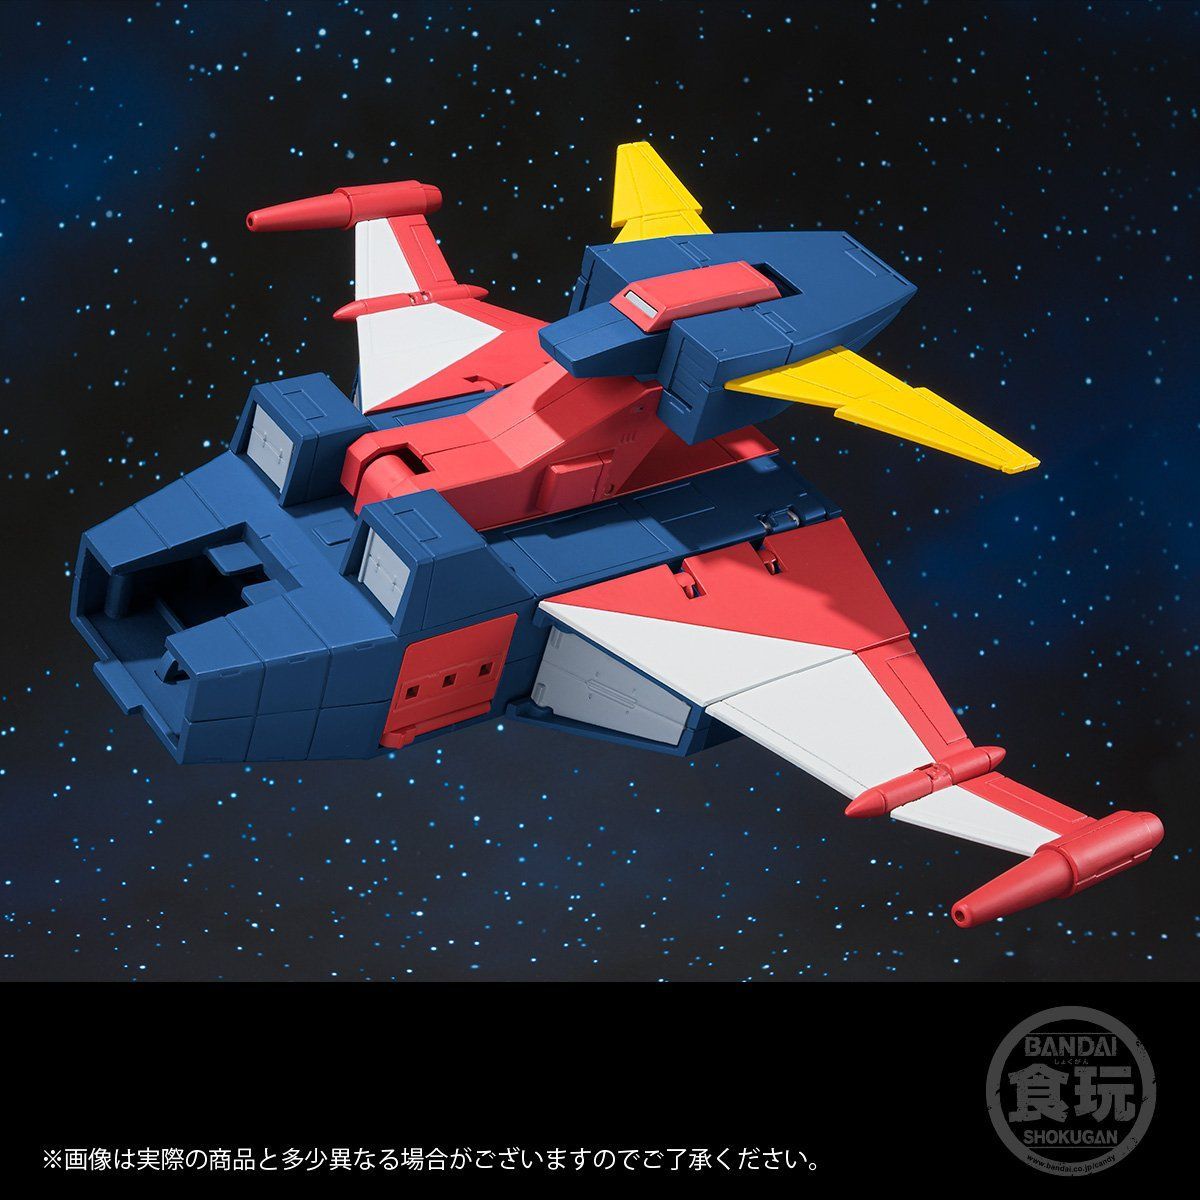 【食玩】スーパーミニプラ『無敵ロボ トライダーG7』3個入りBOX-018